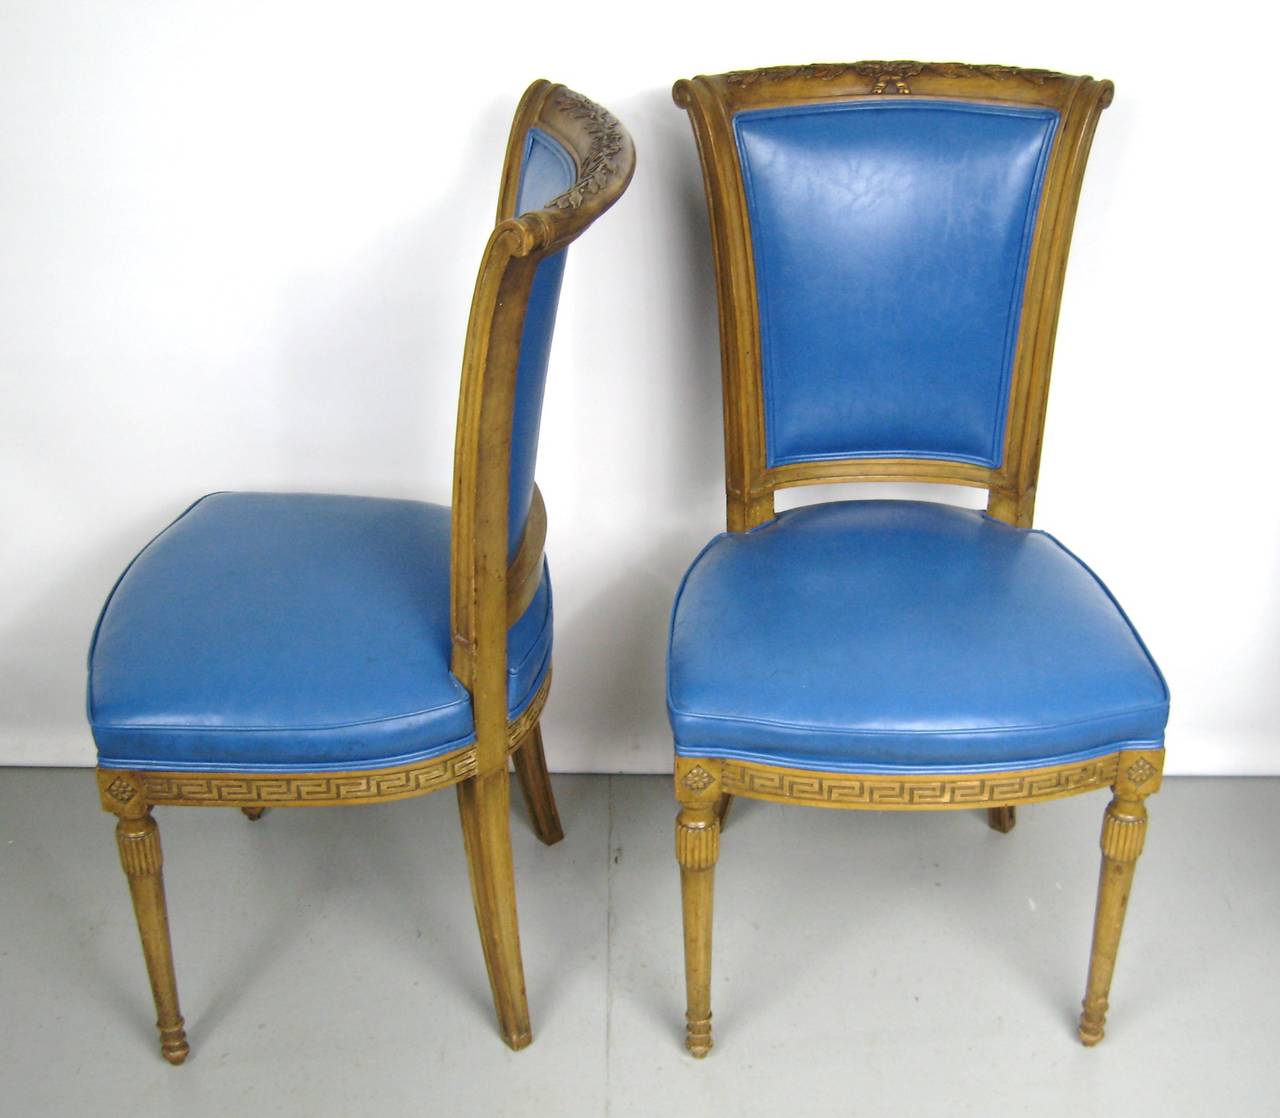 Deux chaises italiennes bleues de style néoclassique Louis XVI. La couleur de ces derniers est stupéfiante. Ils mesurent 37 po H 23 po P 18,25 po de large, hauteur du siège 18,5 po. Nous avons une paire de chaises capitaine sur notre vitrine qui